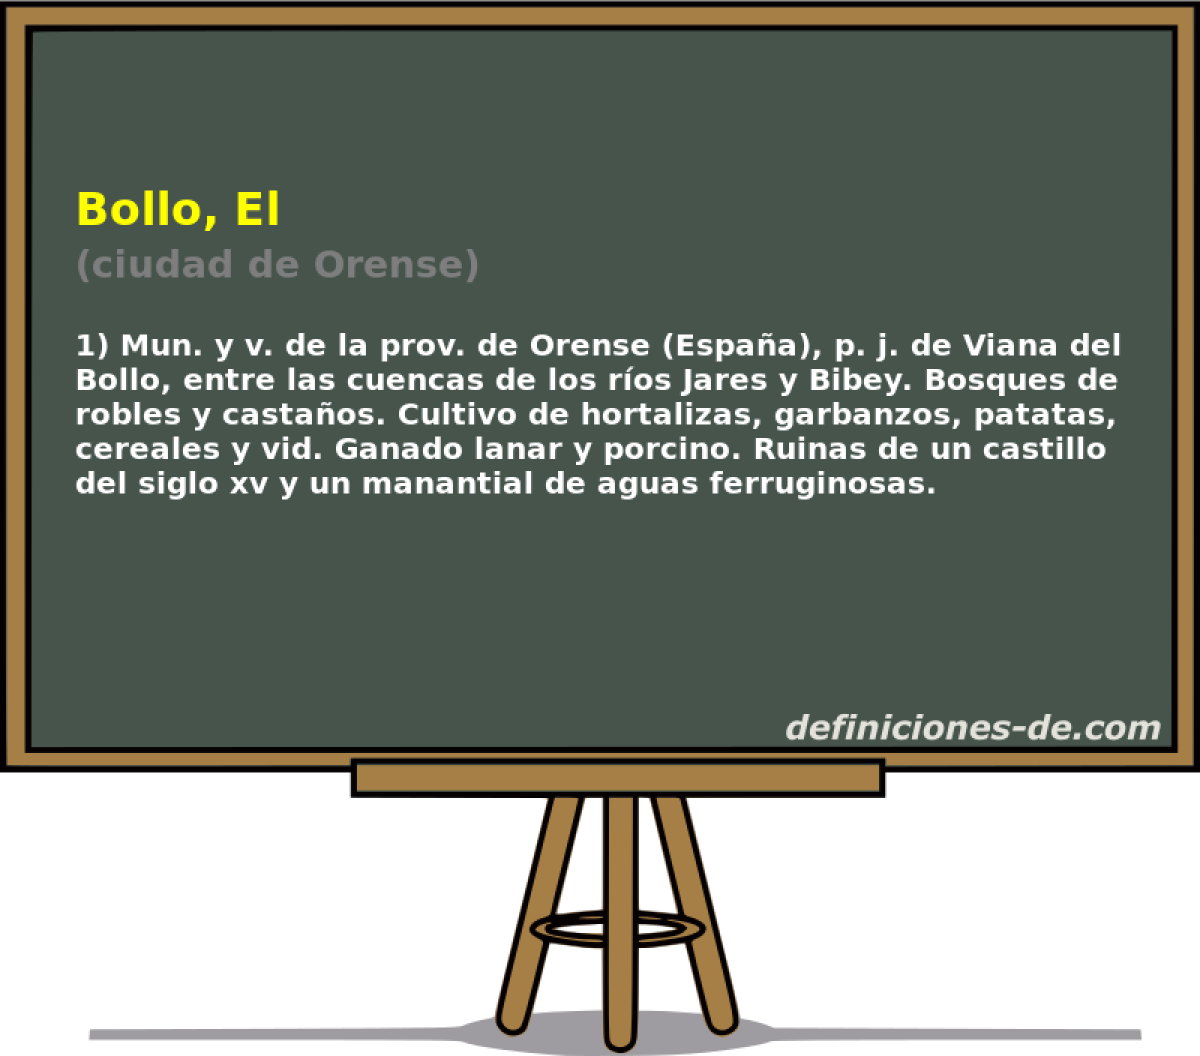 Bollo, El (ciudad de Orense)